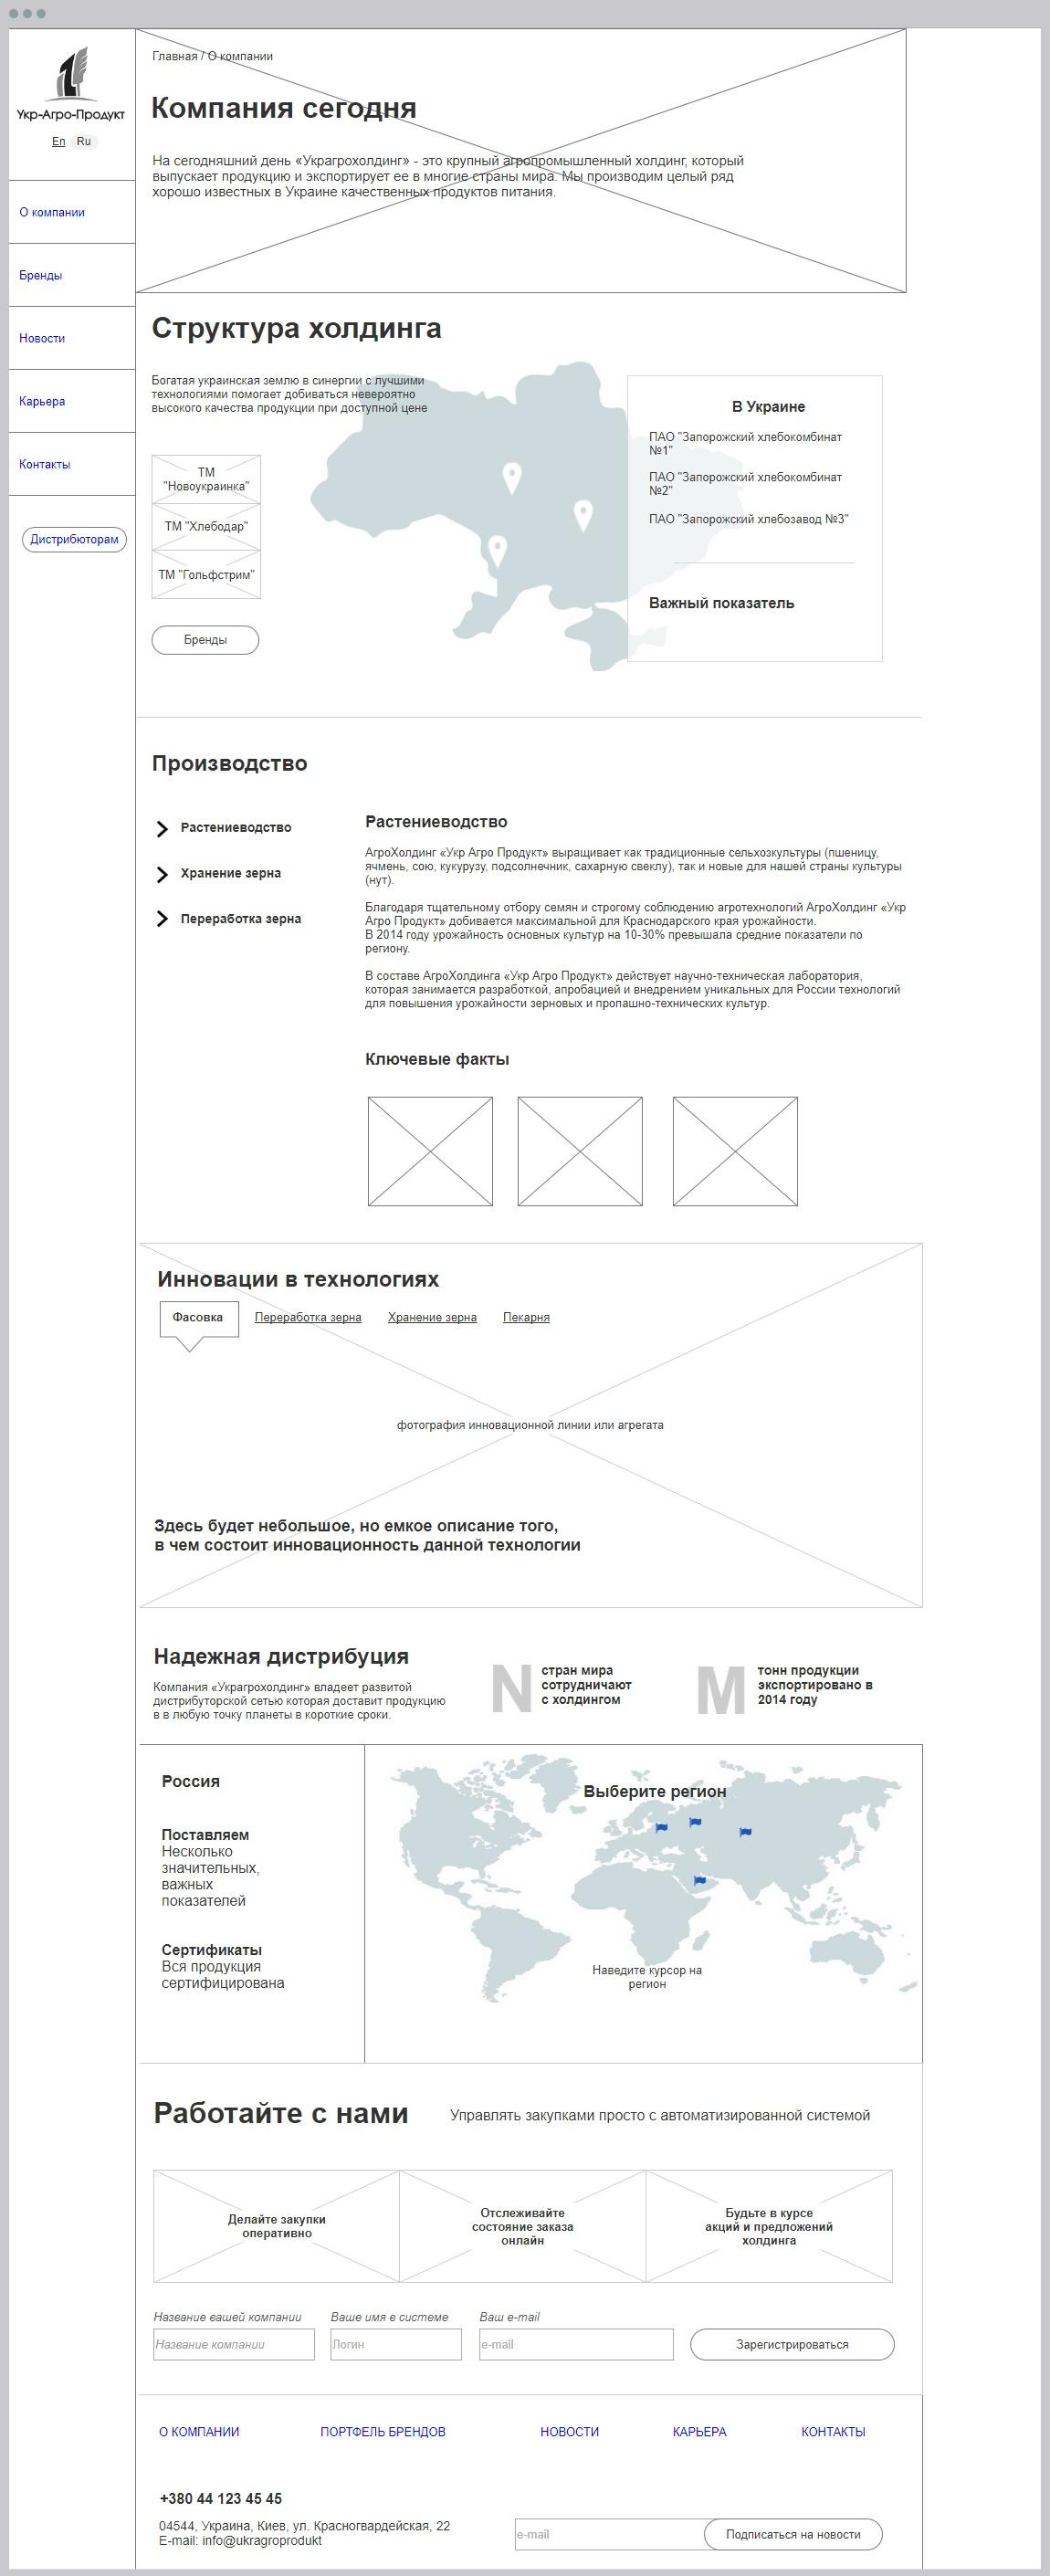 Прототип корпоративного сайта компании Украгропродукт | проекты Evergreen 11